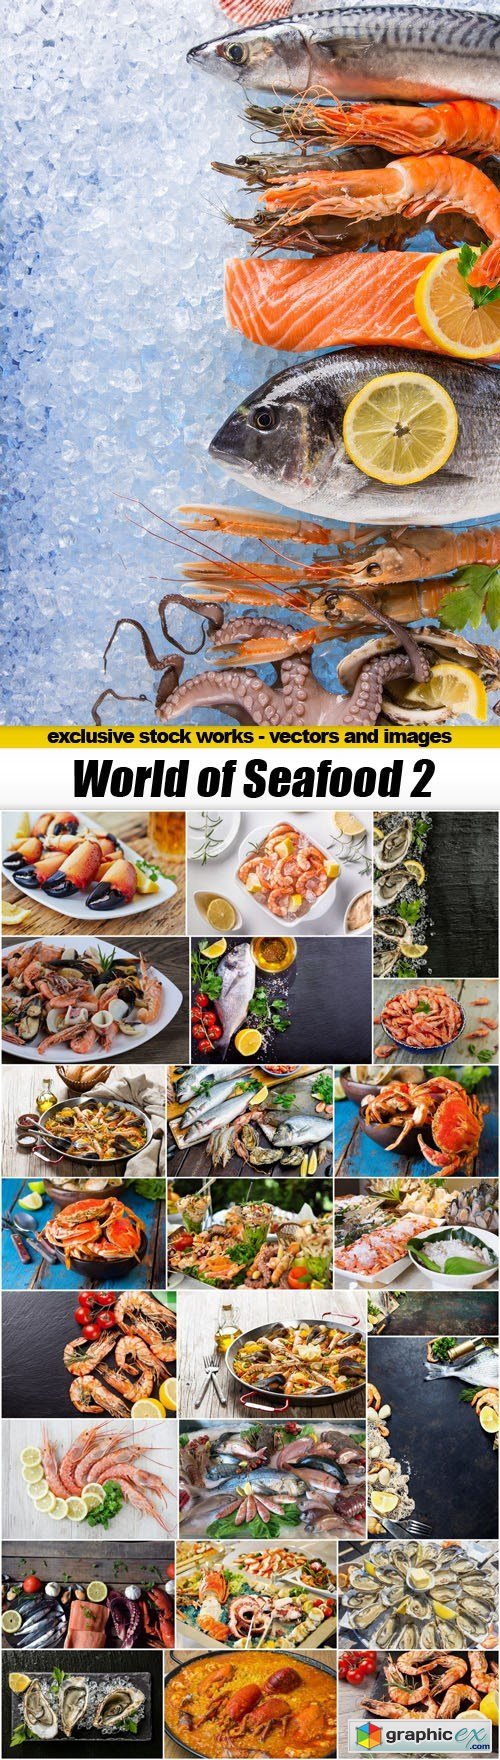 World of Seafood 2 - 25xUHQ JPEG